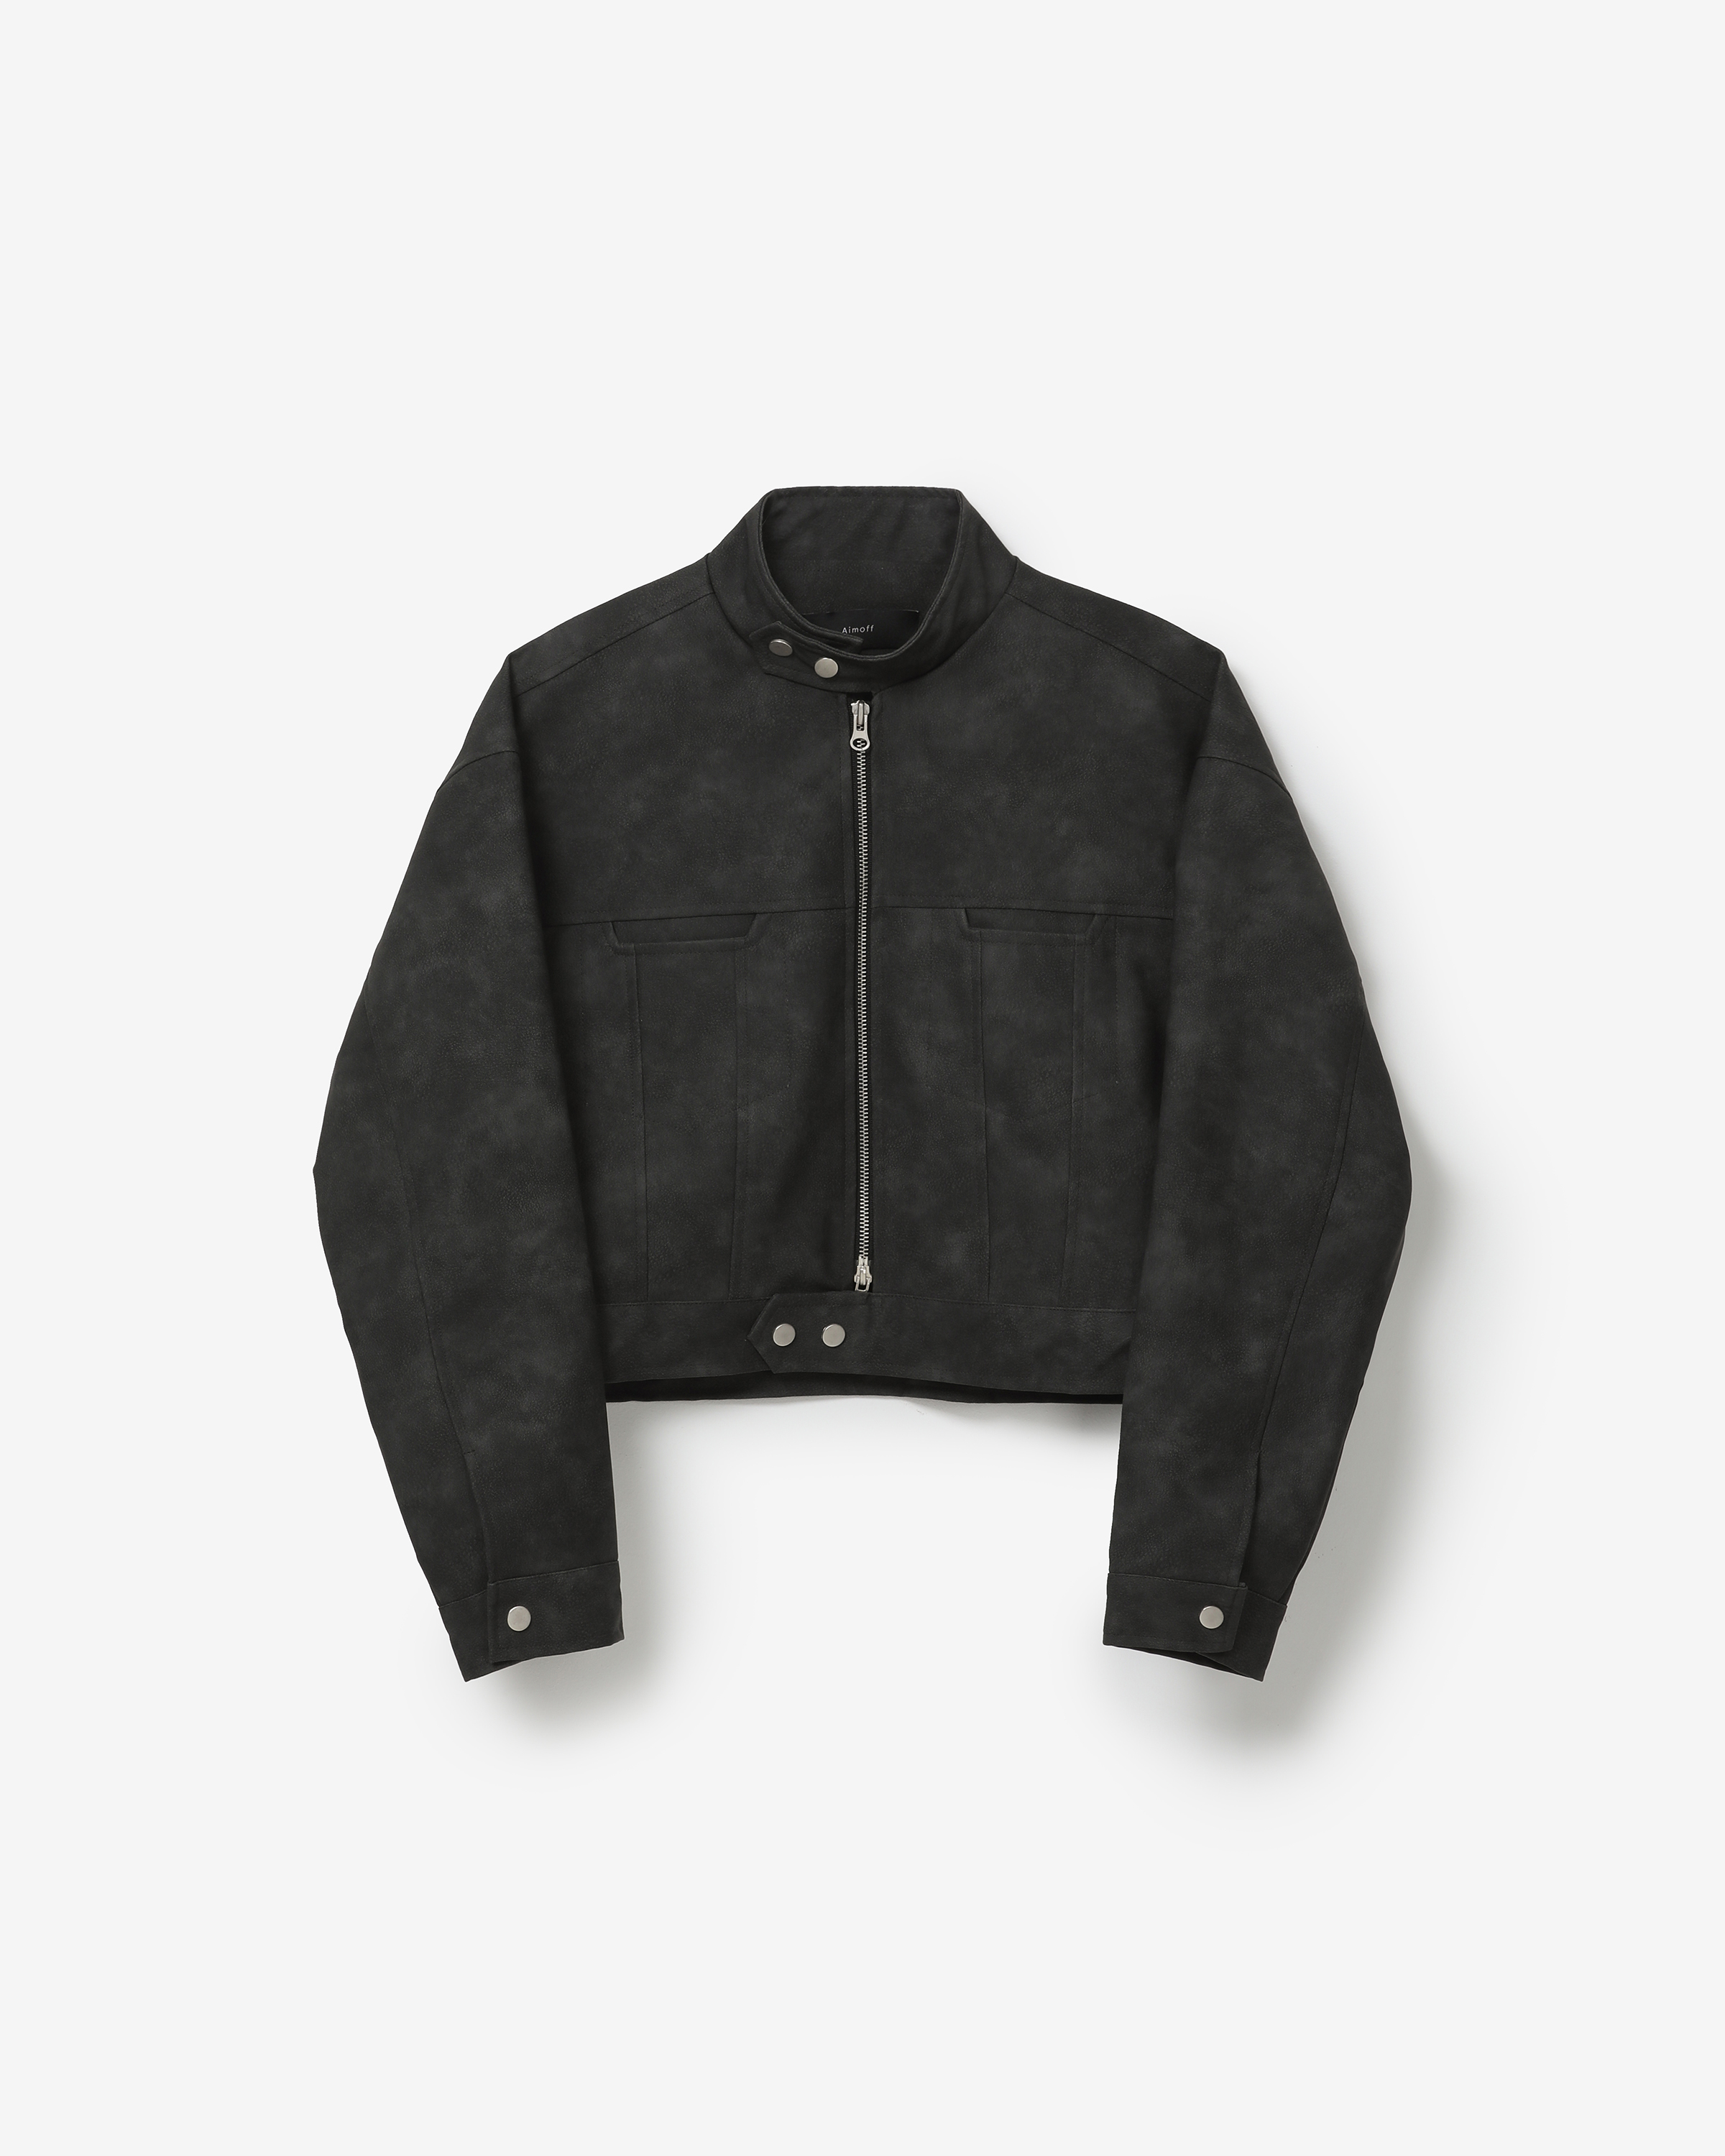 vegan leather biker jacket [ natural black ]